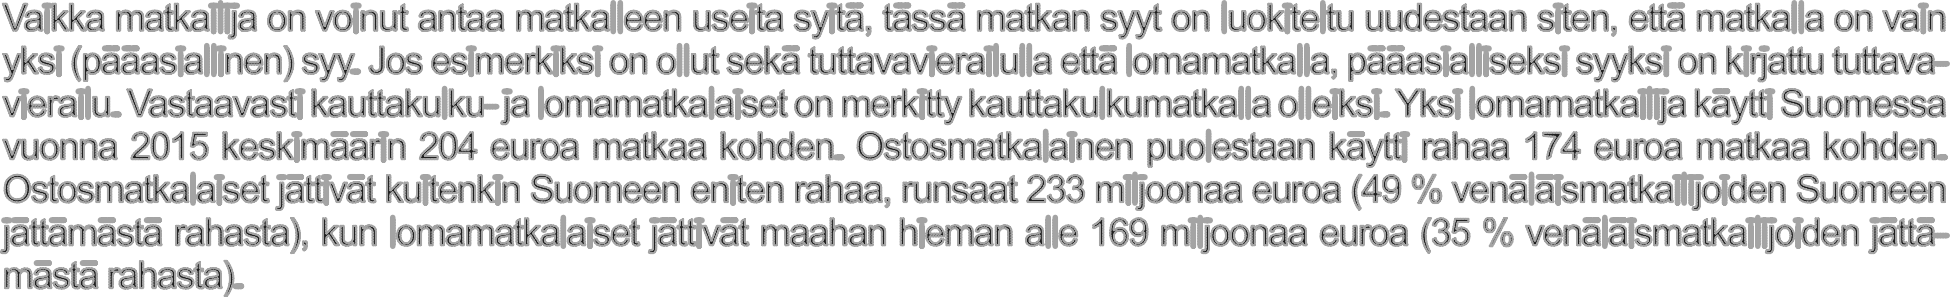 19 Rahan käyttö matkan tarkoituksen mukaan Venäläismatkailijoiden Suomeen jättämästä rahasta 49 % tuli ostosmatkailijoilta yhteensä (vasen akseli)